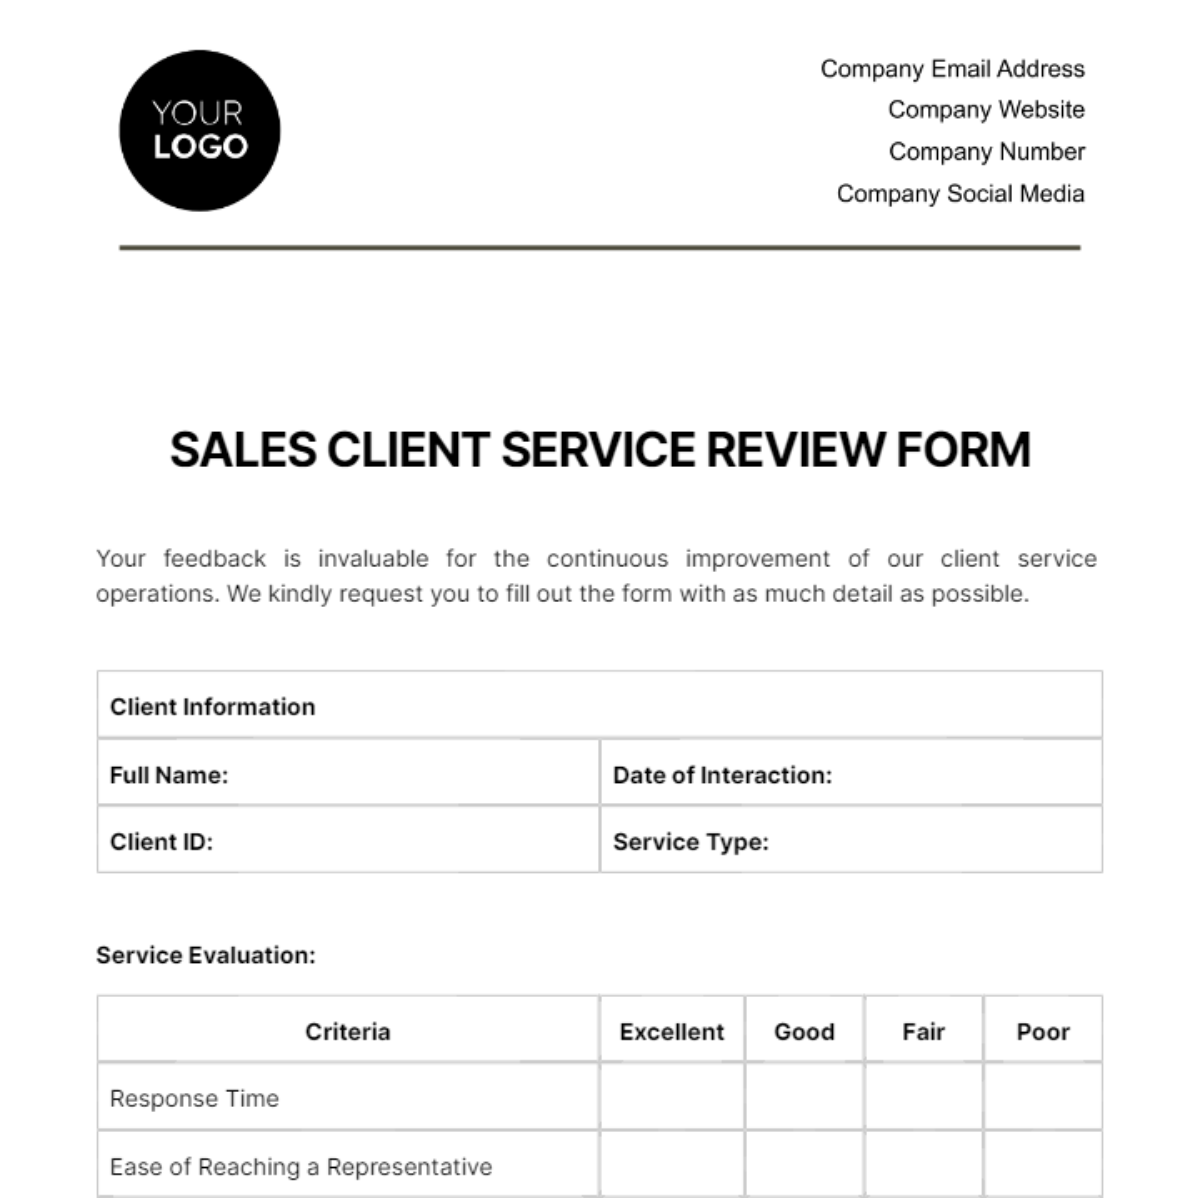 Sales Client Service Review Form Template